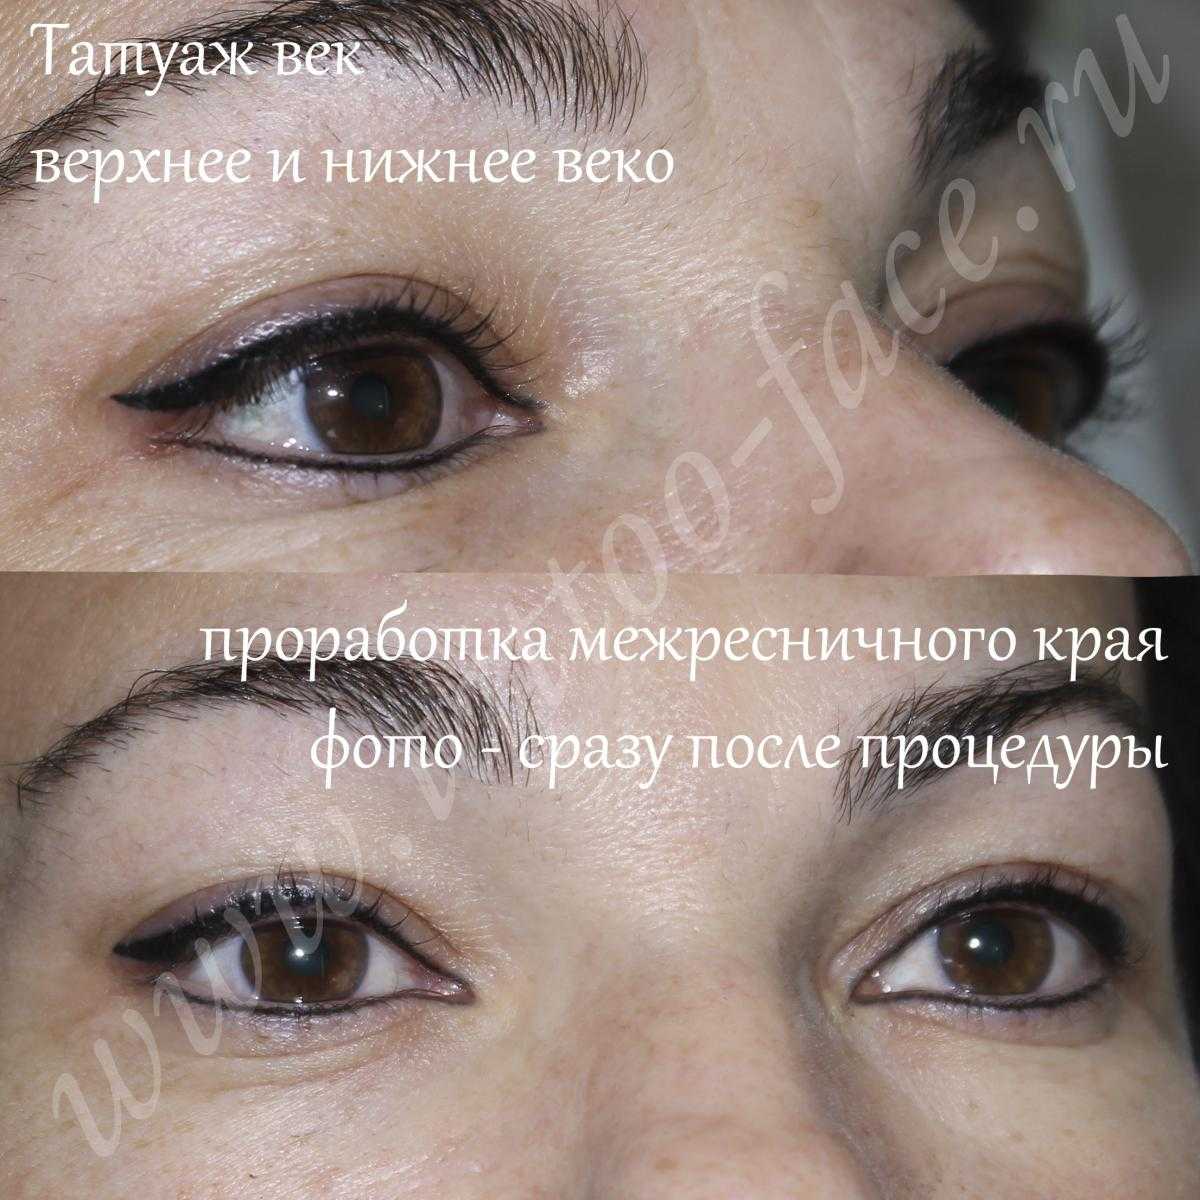 Татуаж стрелки на глазах - виды татуажа, фото до и после